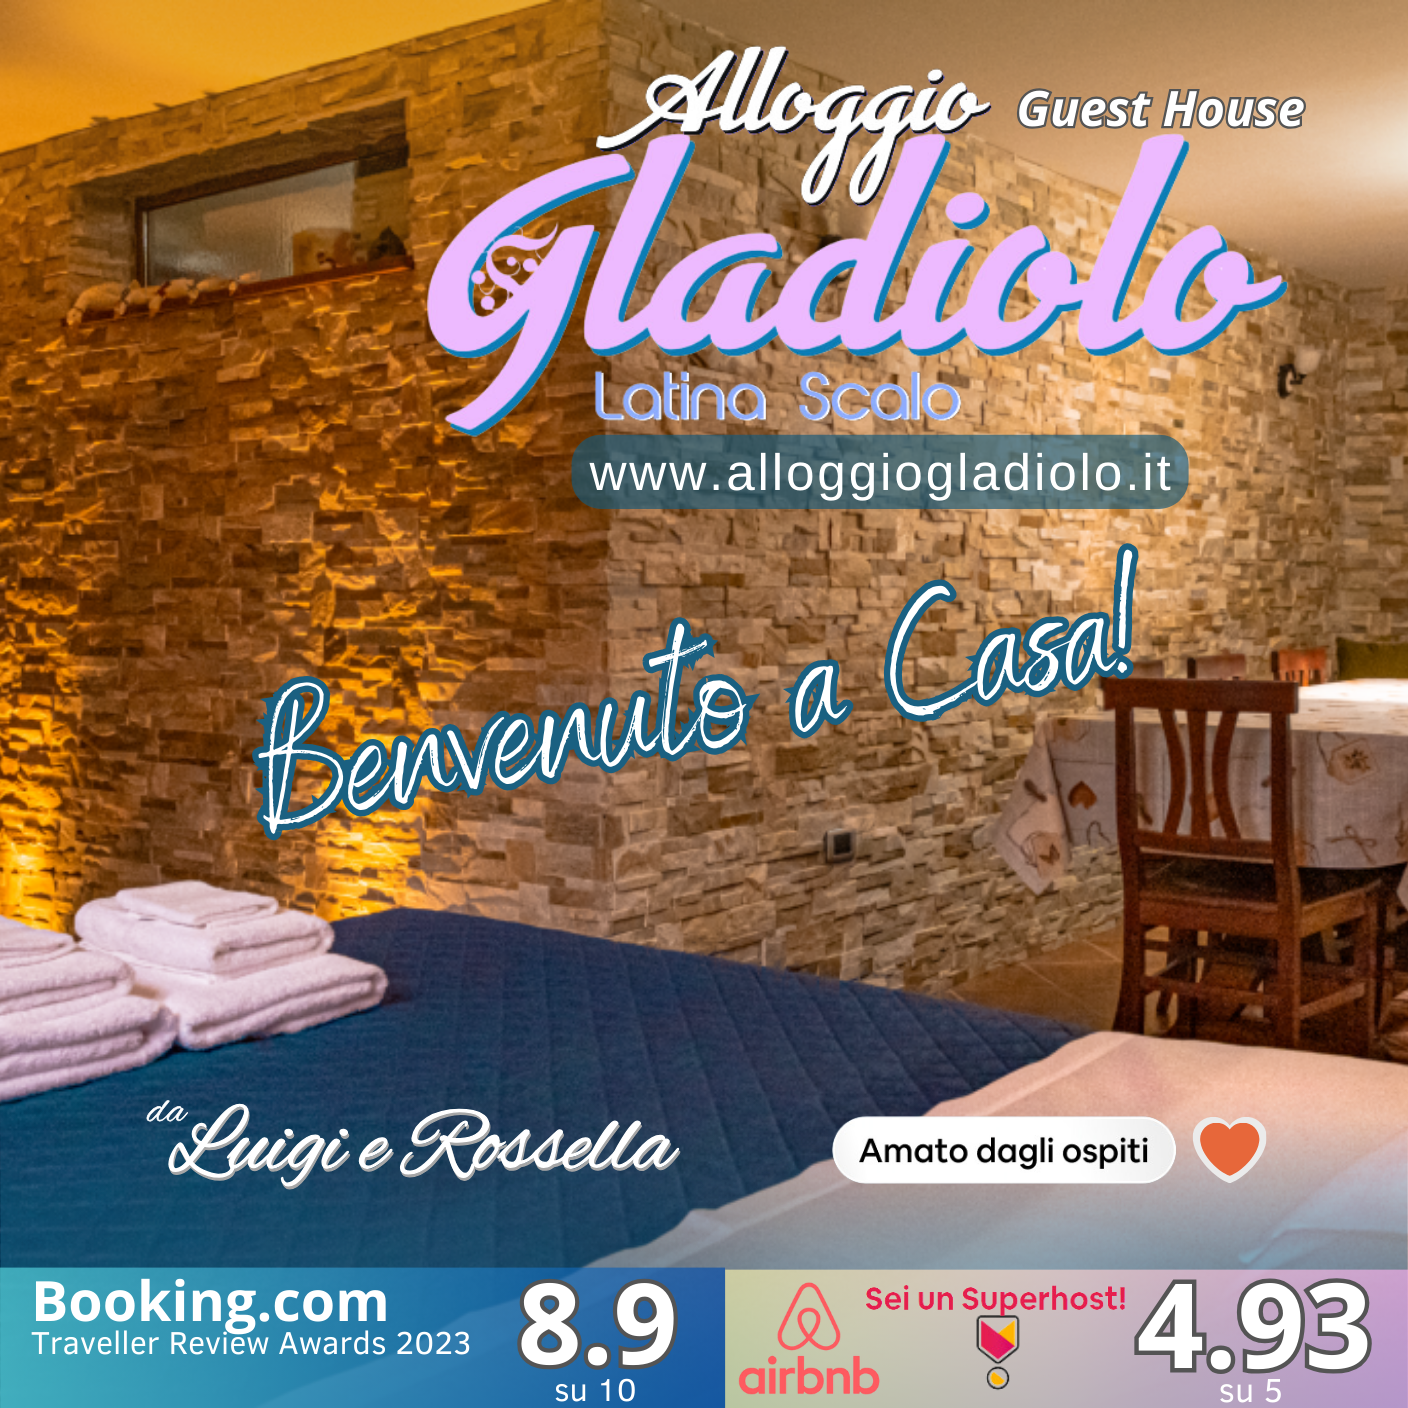 Alloggio Gladiolo Guest House - Latina Scalo - copertina - gennaio 2024